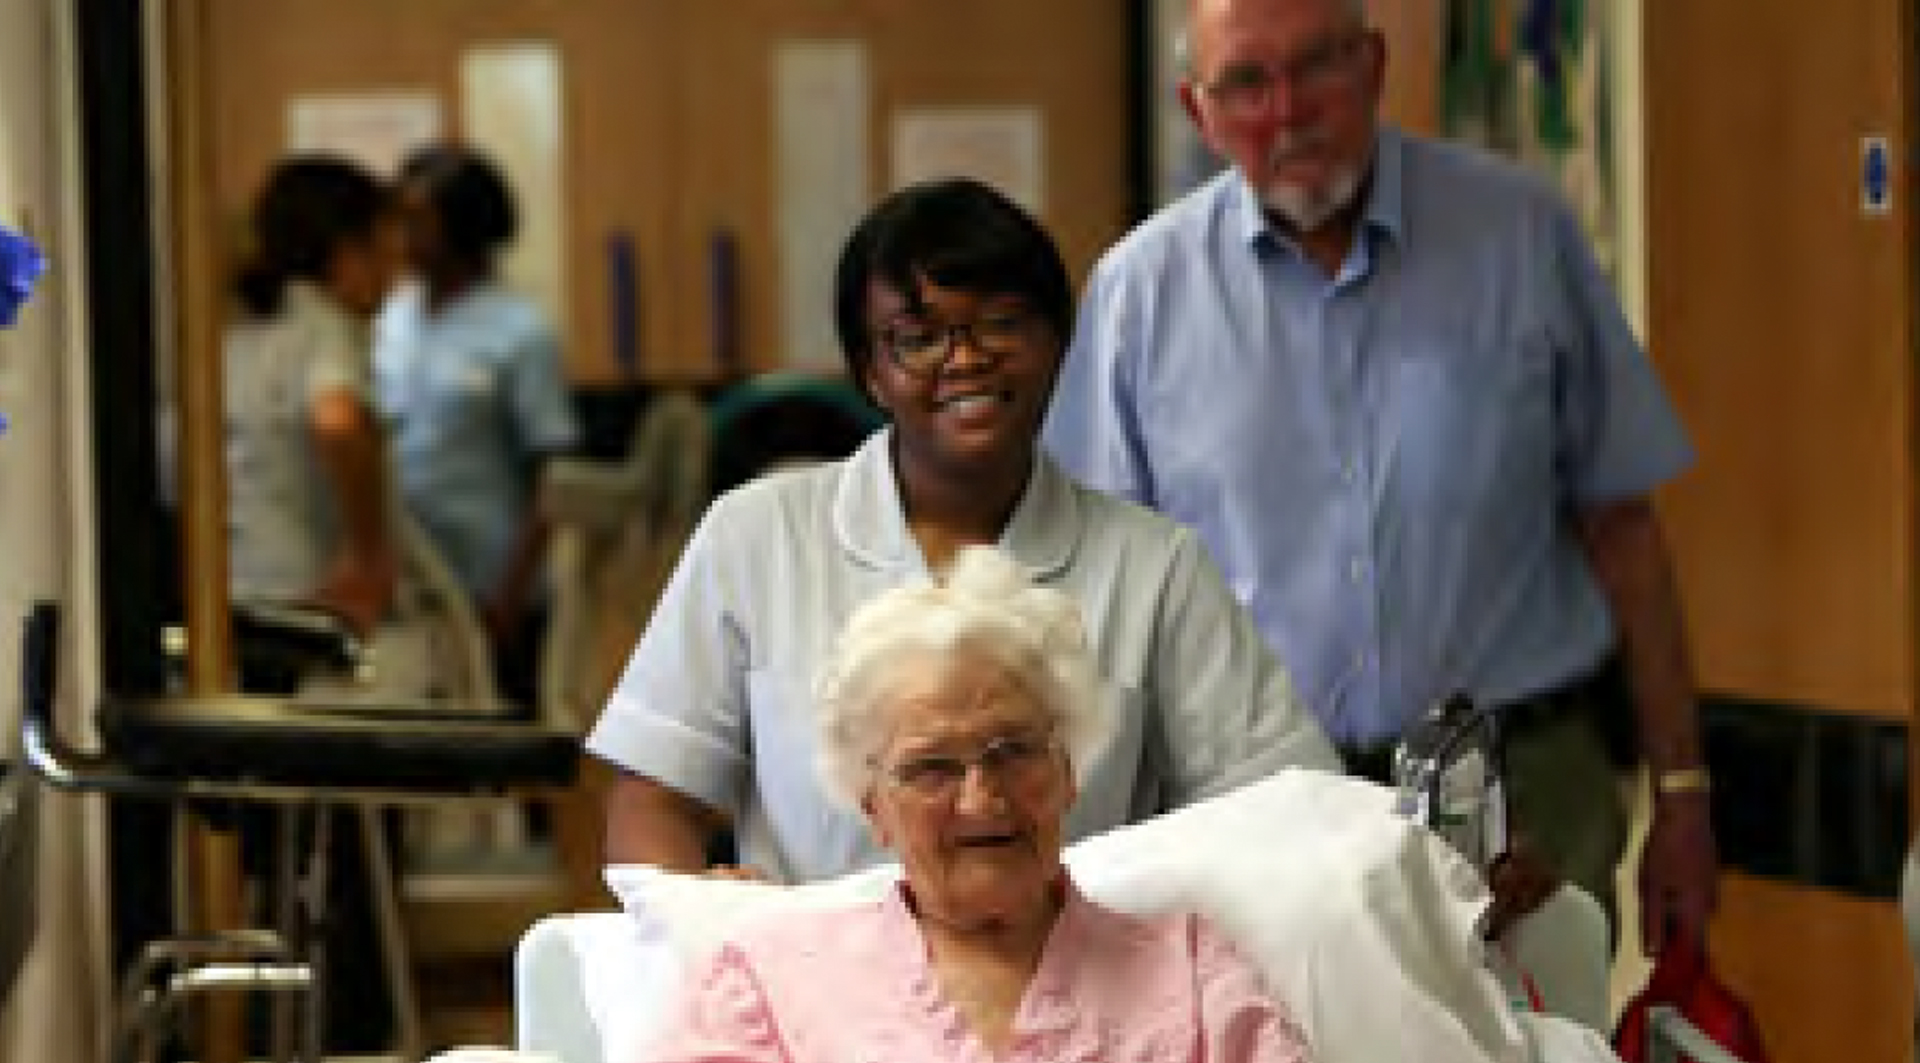 Elderly patient smiling